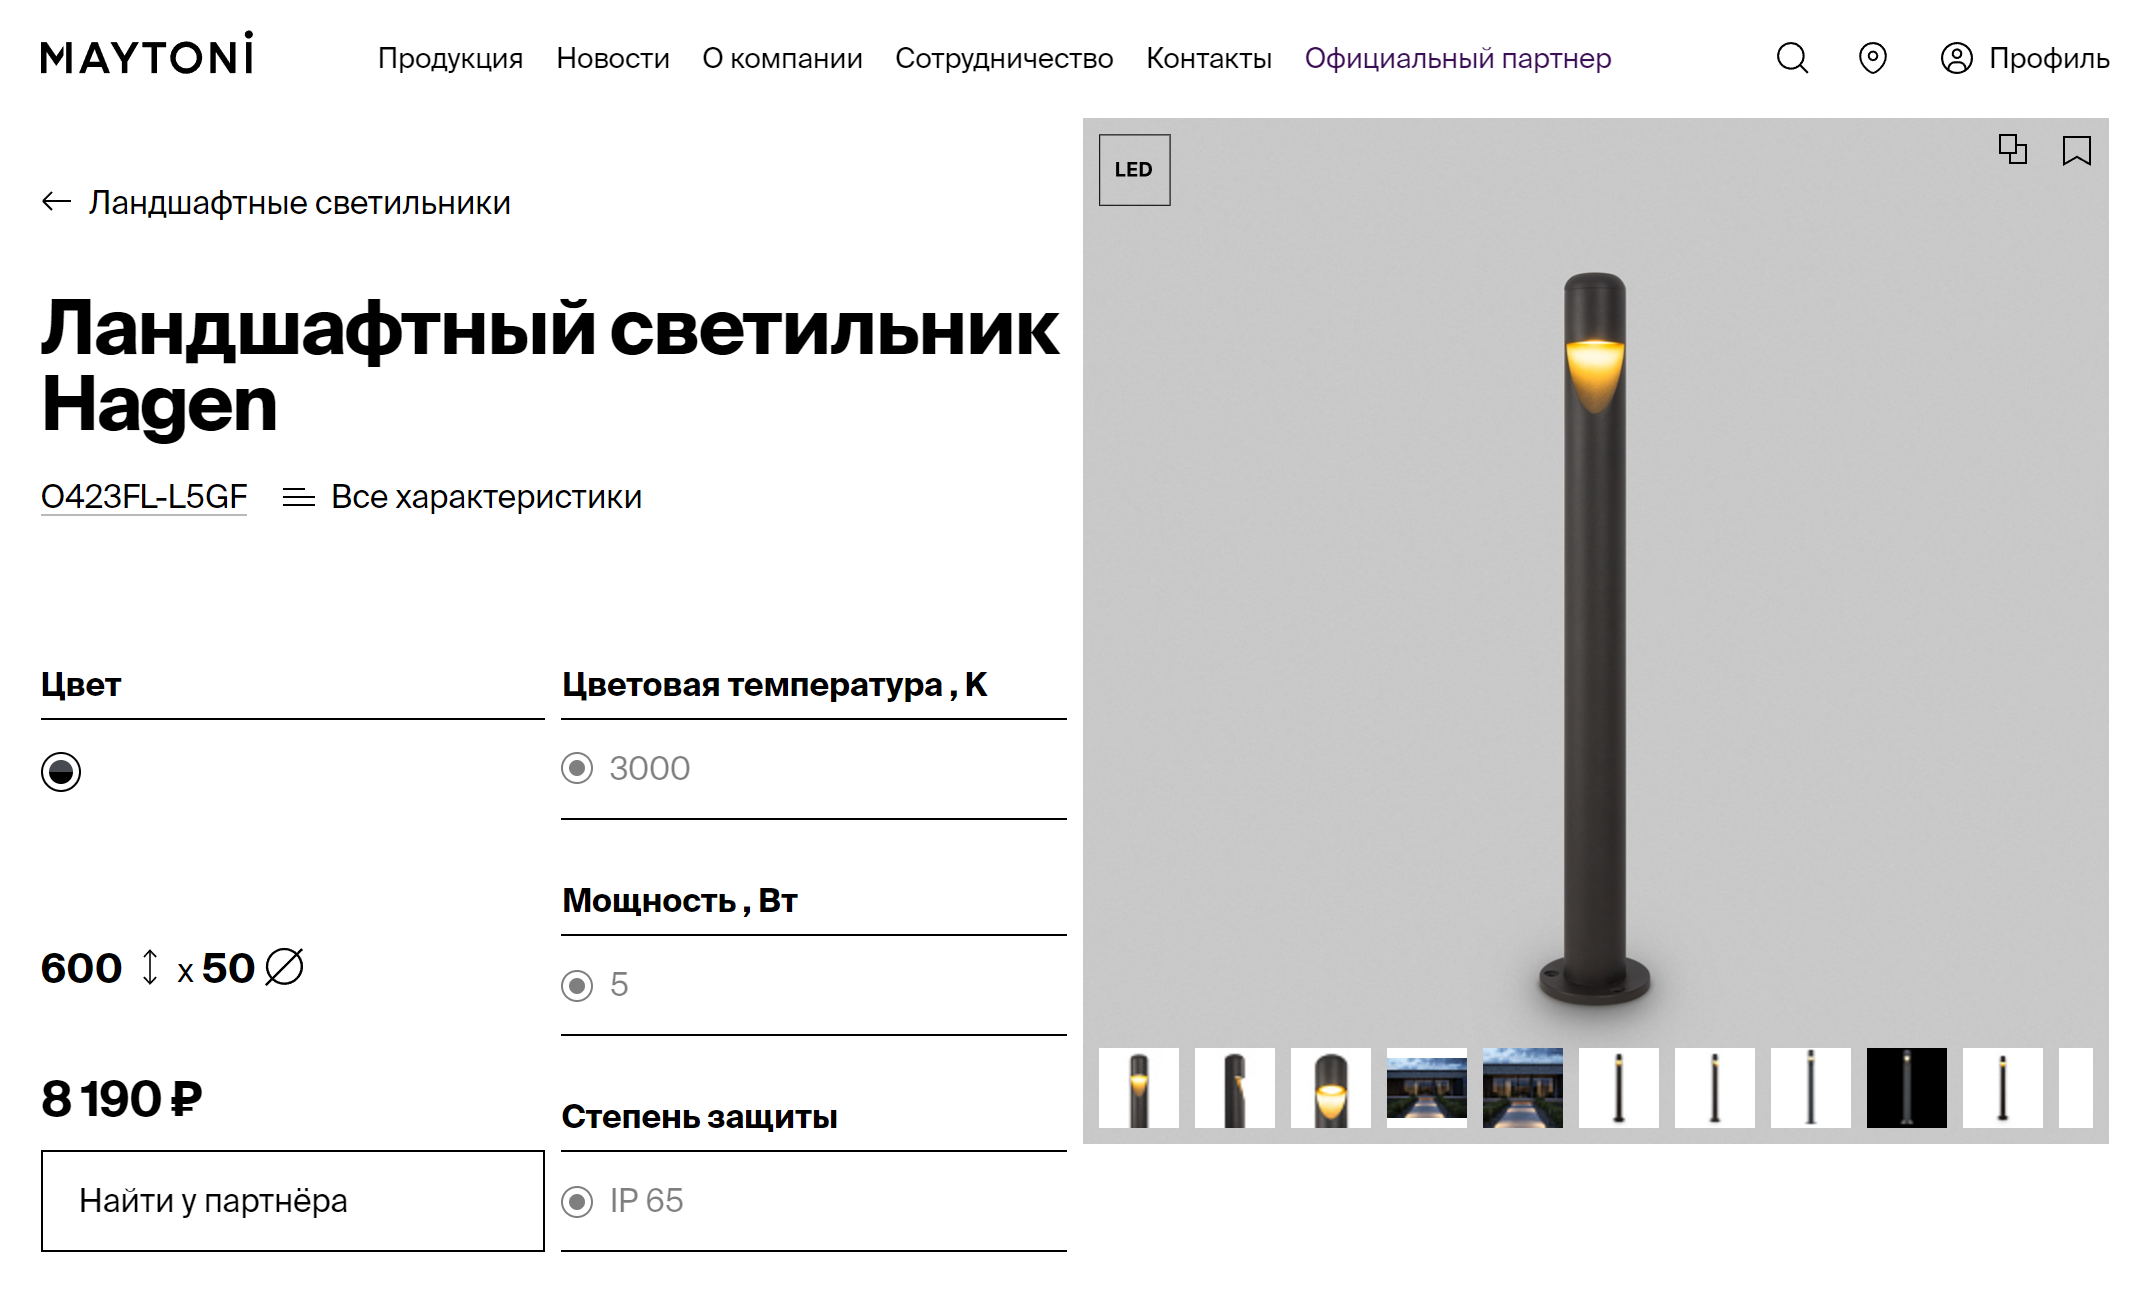 А вот этот светильник сможет подсвечивать дорожку и зимой. Обратите внимание на высоту столбика и степень защиты. Источник: maytoni.ru